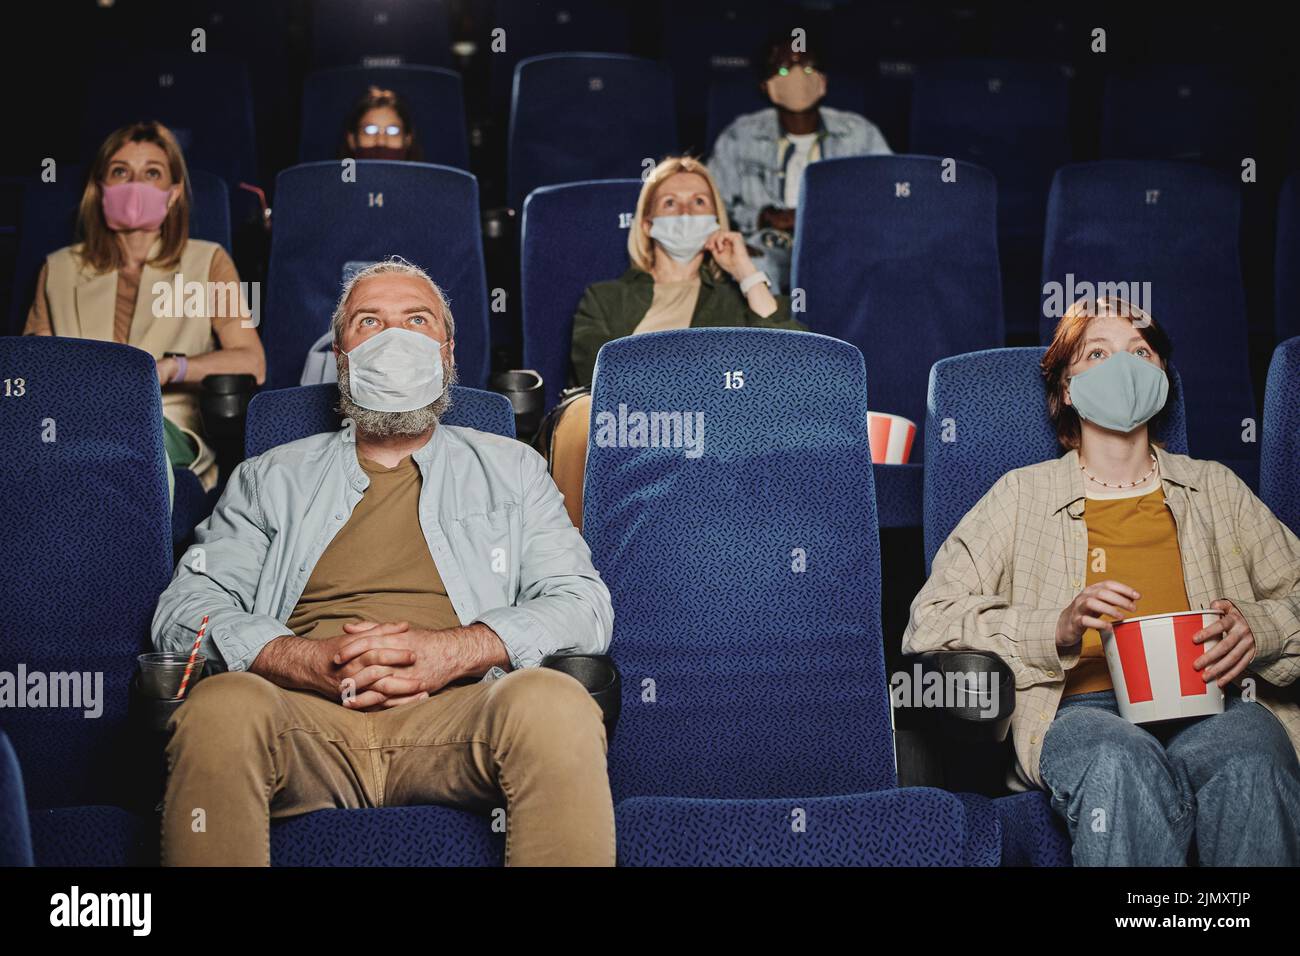 Grupo de personas que llevaban máscaras, manteniéndose alejados unos de otros viendo una película en el cine durante la cuarentena Foto de stock